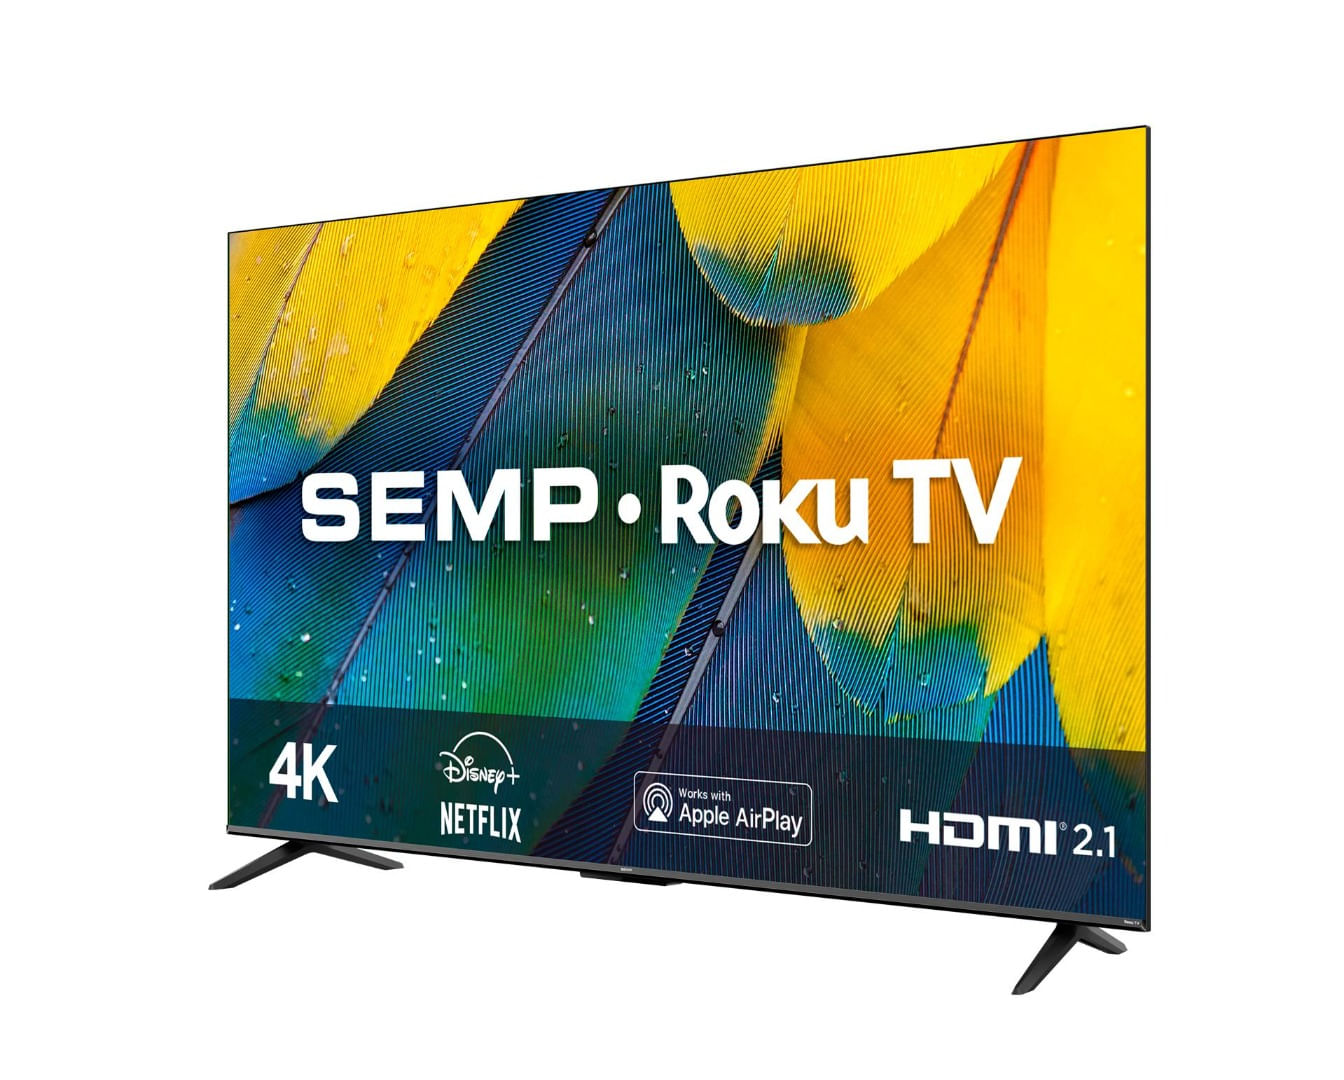 SMART LED TV 50¿ ROKU SEMP 4K UHD RK8600 Wifi dual band, com controle por aplicativo, compatível com Google Assistant, Alexa e Apple homekit